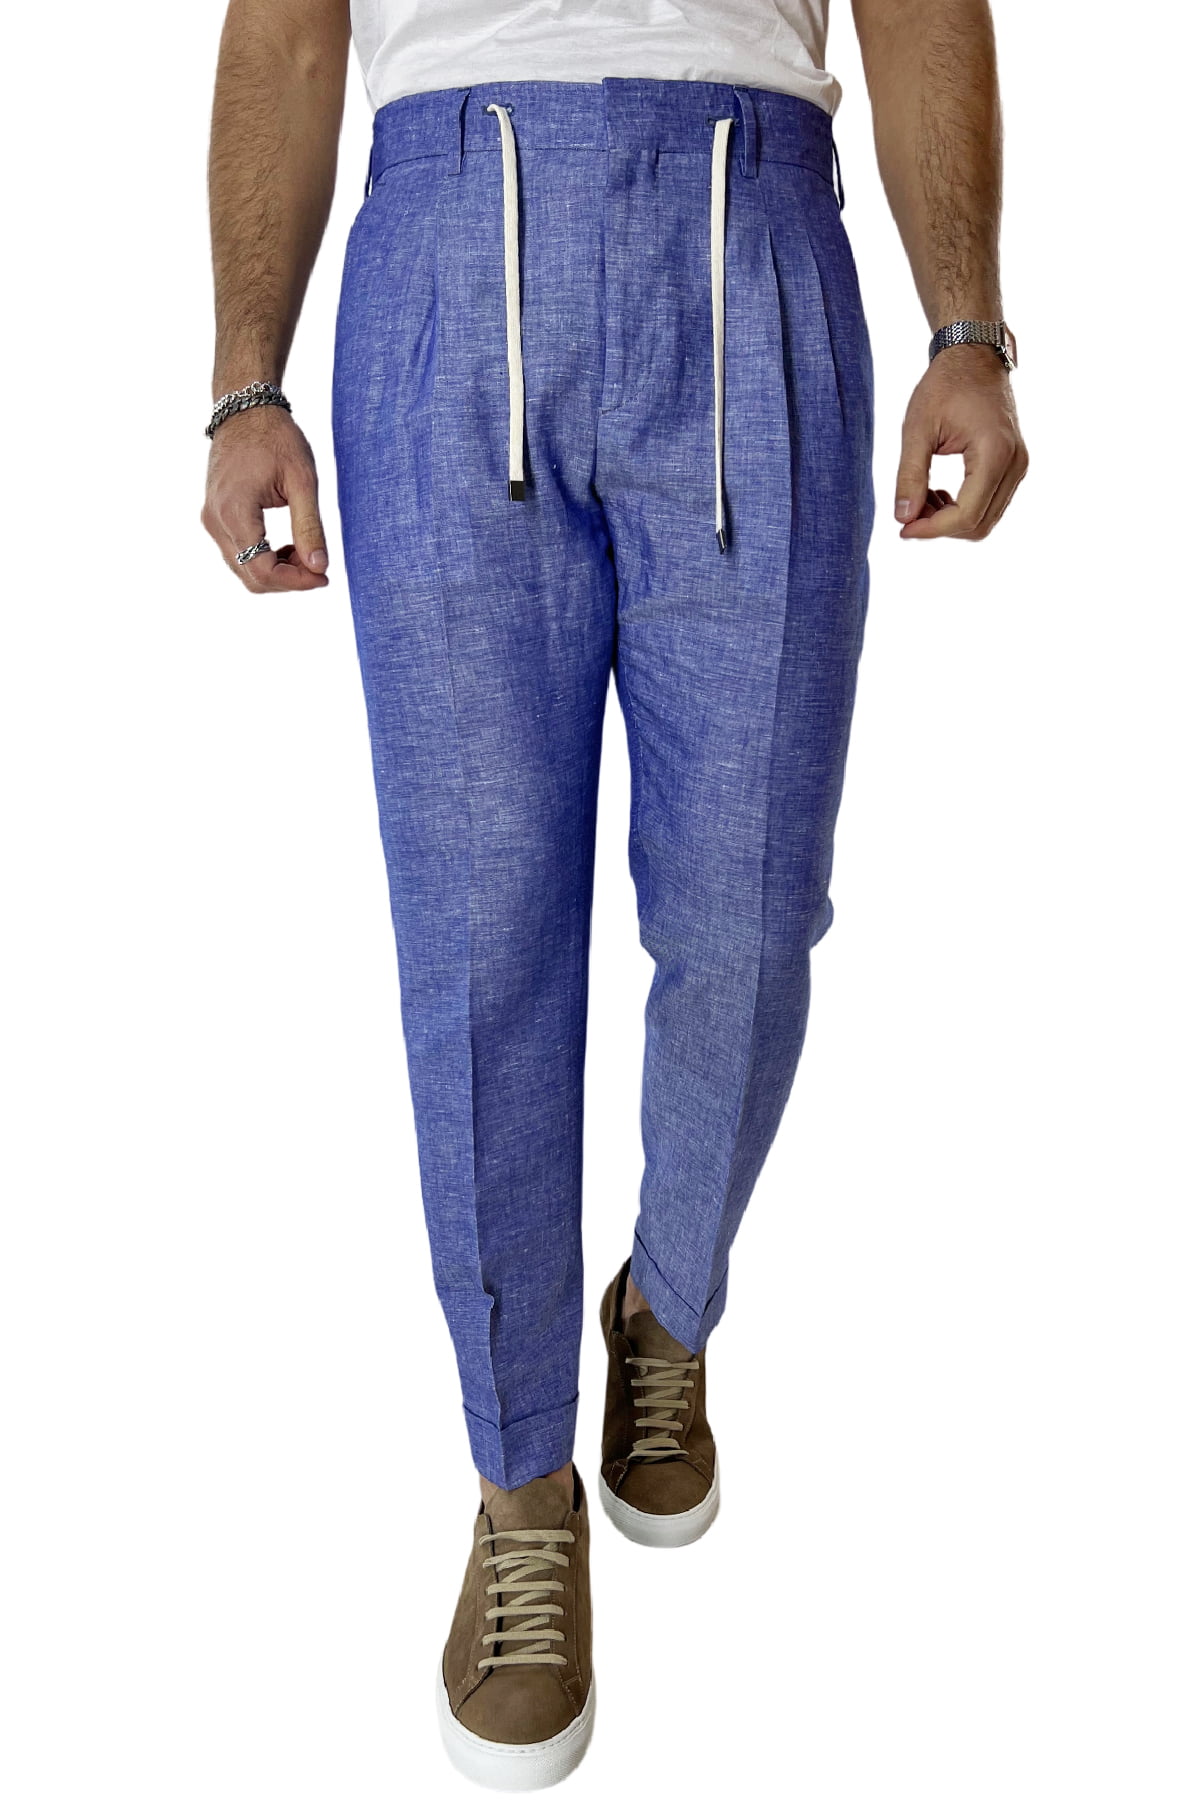 Pantalaccio uomo royal blu in lino e cotone tasca america con doppia pence e laccio in vita risvolto 4cm